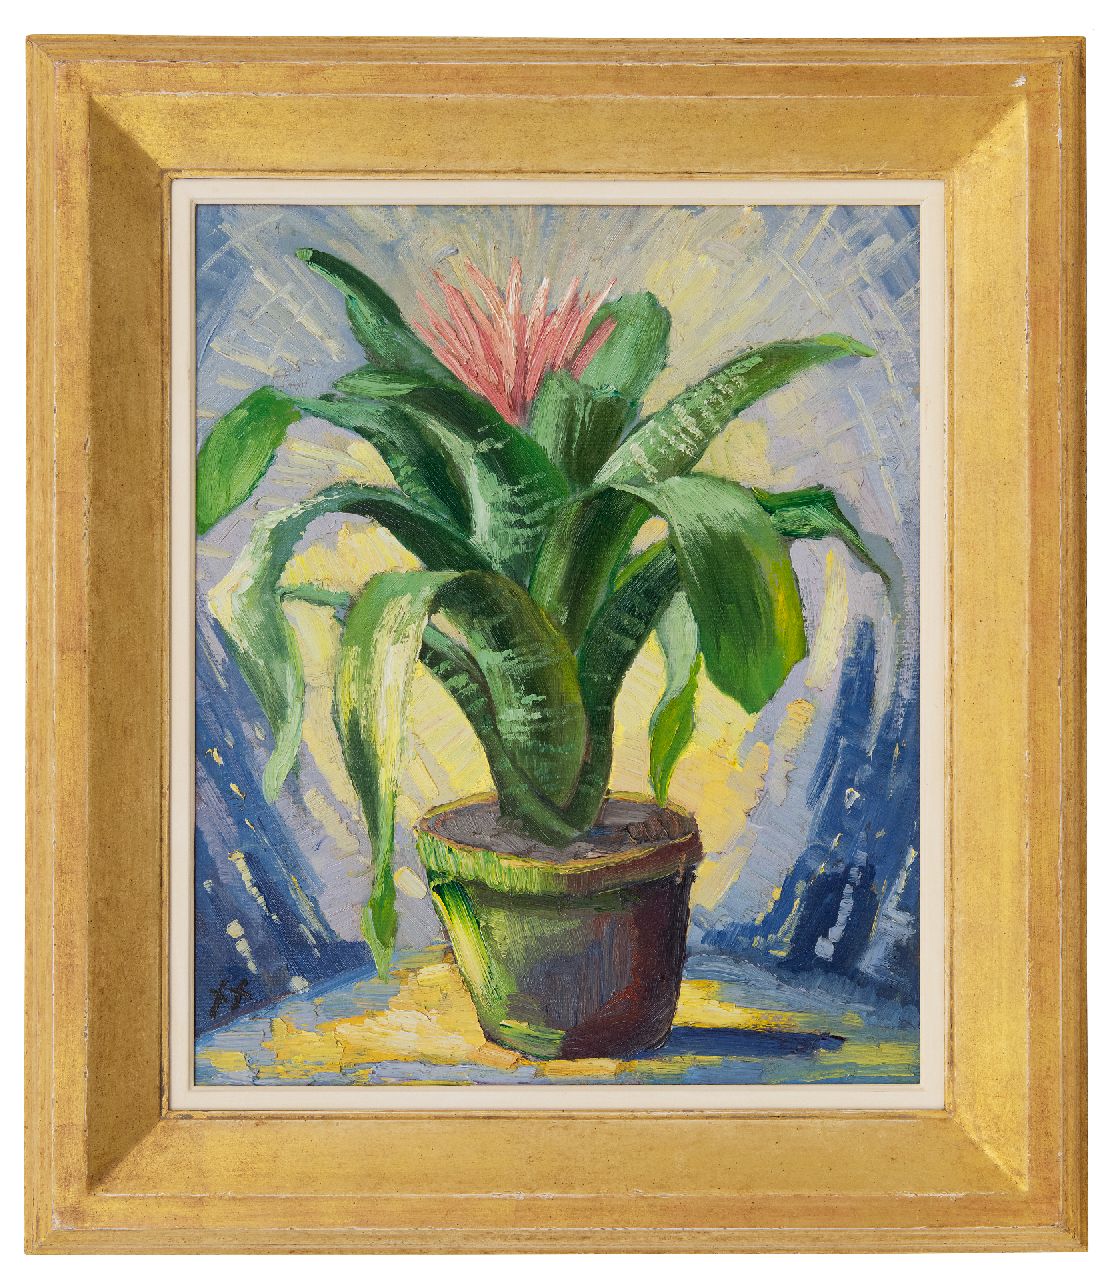 Kruysen J.  | Johannes 'Jan' Kruysen | Schilderijen te koop aangeboden | Bromelia in aardewerken pot, olieverf op schildersboard 45,8 x 37,8 cm, gesigneerd linksonder met monogram